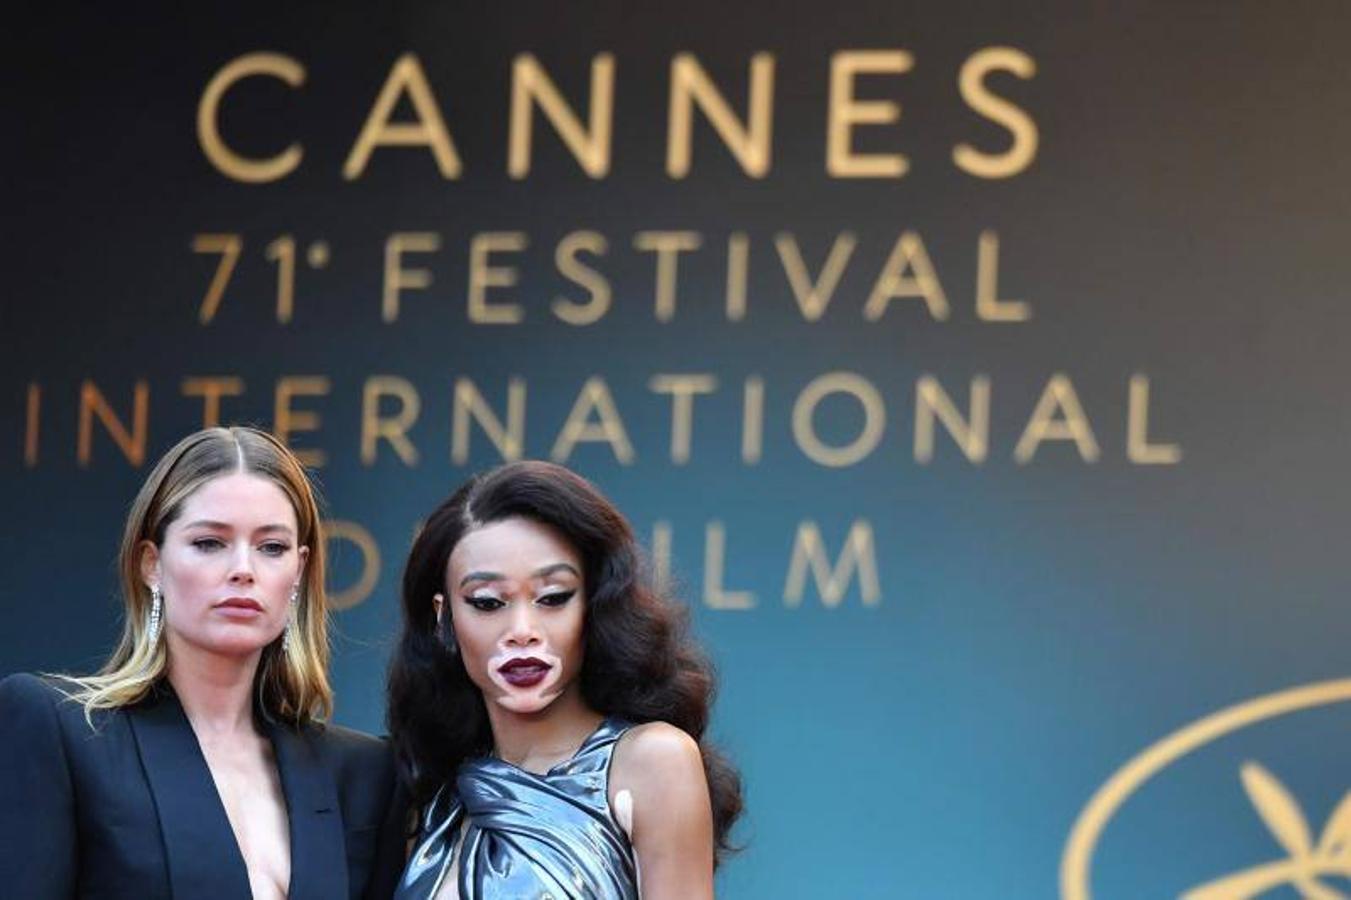 La jornada de este martes en el Festival de Cine de Cannes ha sido un cócktel de protagonistas, vestidos atrevidos, pancartas de protesta contra los asesinatos en Gaza, un hombre volanto y un desfile de Star Wars